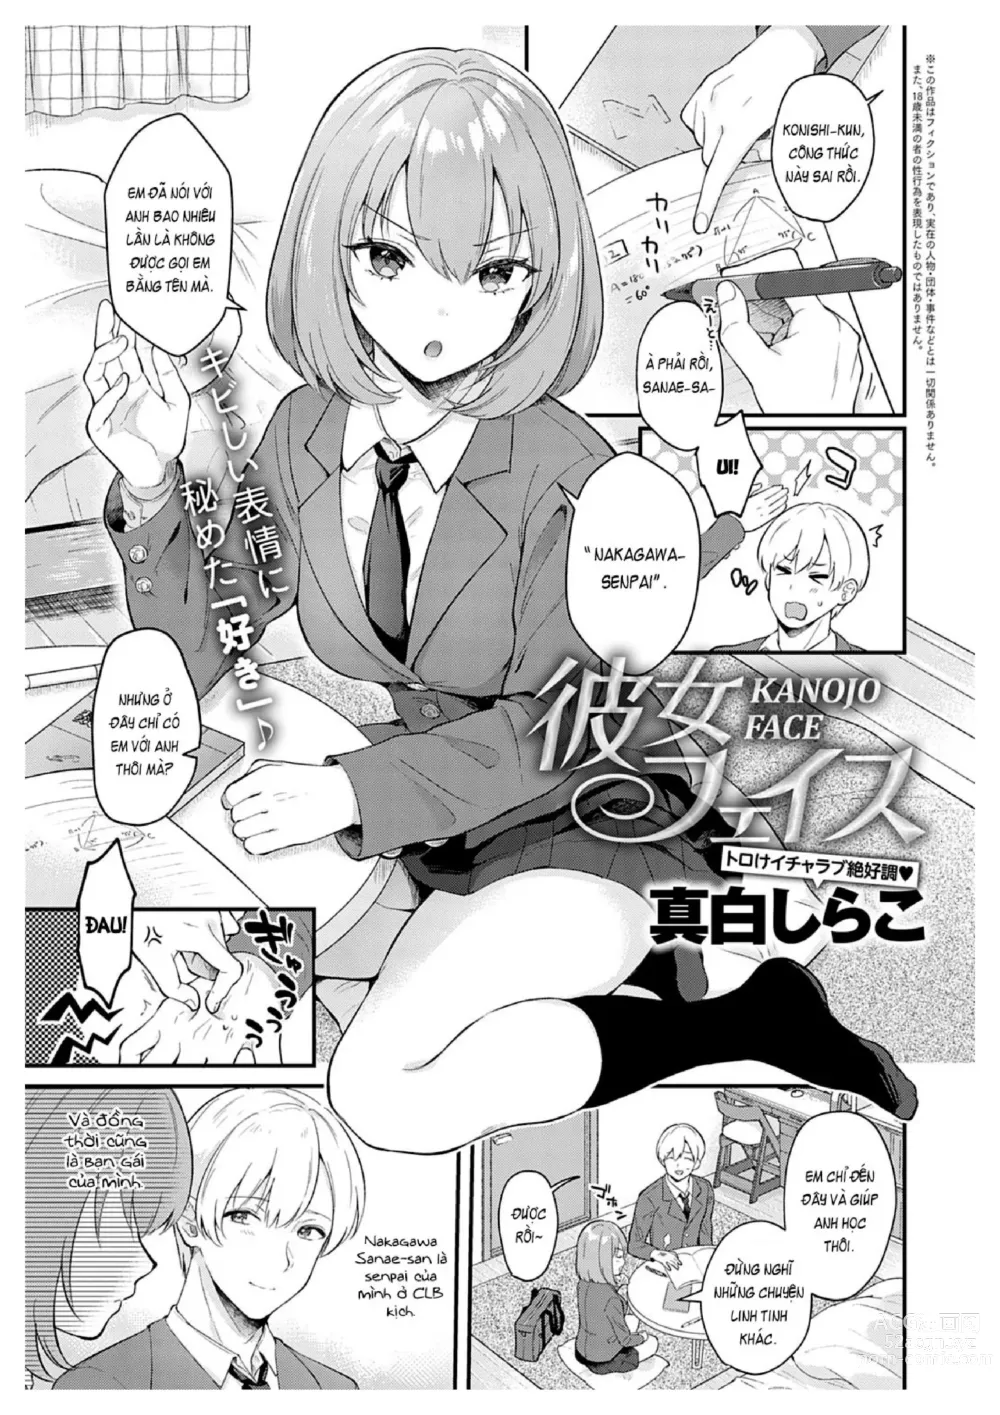 Page 1 of manga Kanojo Face